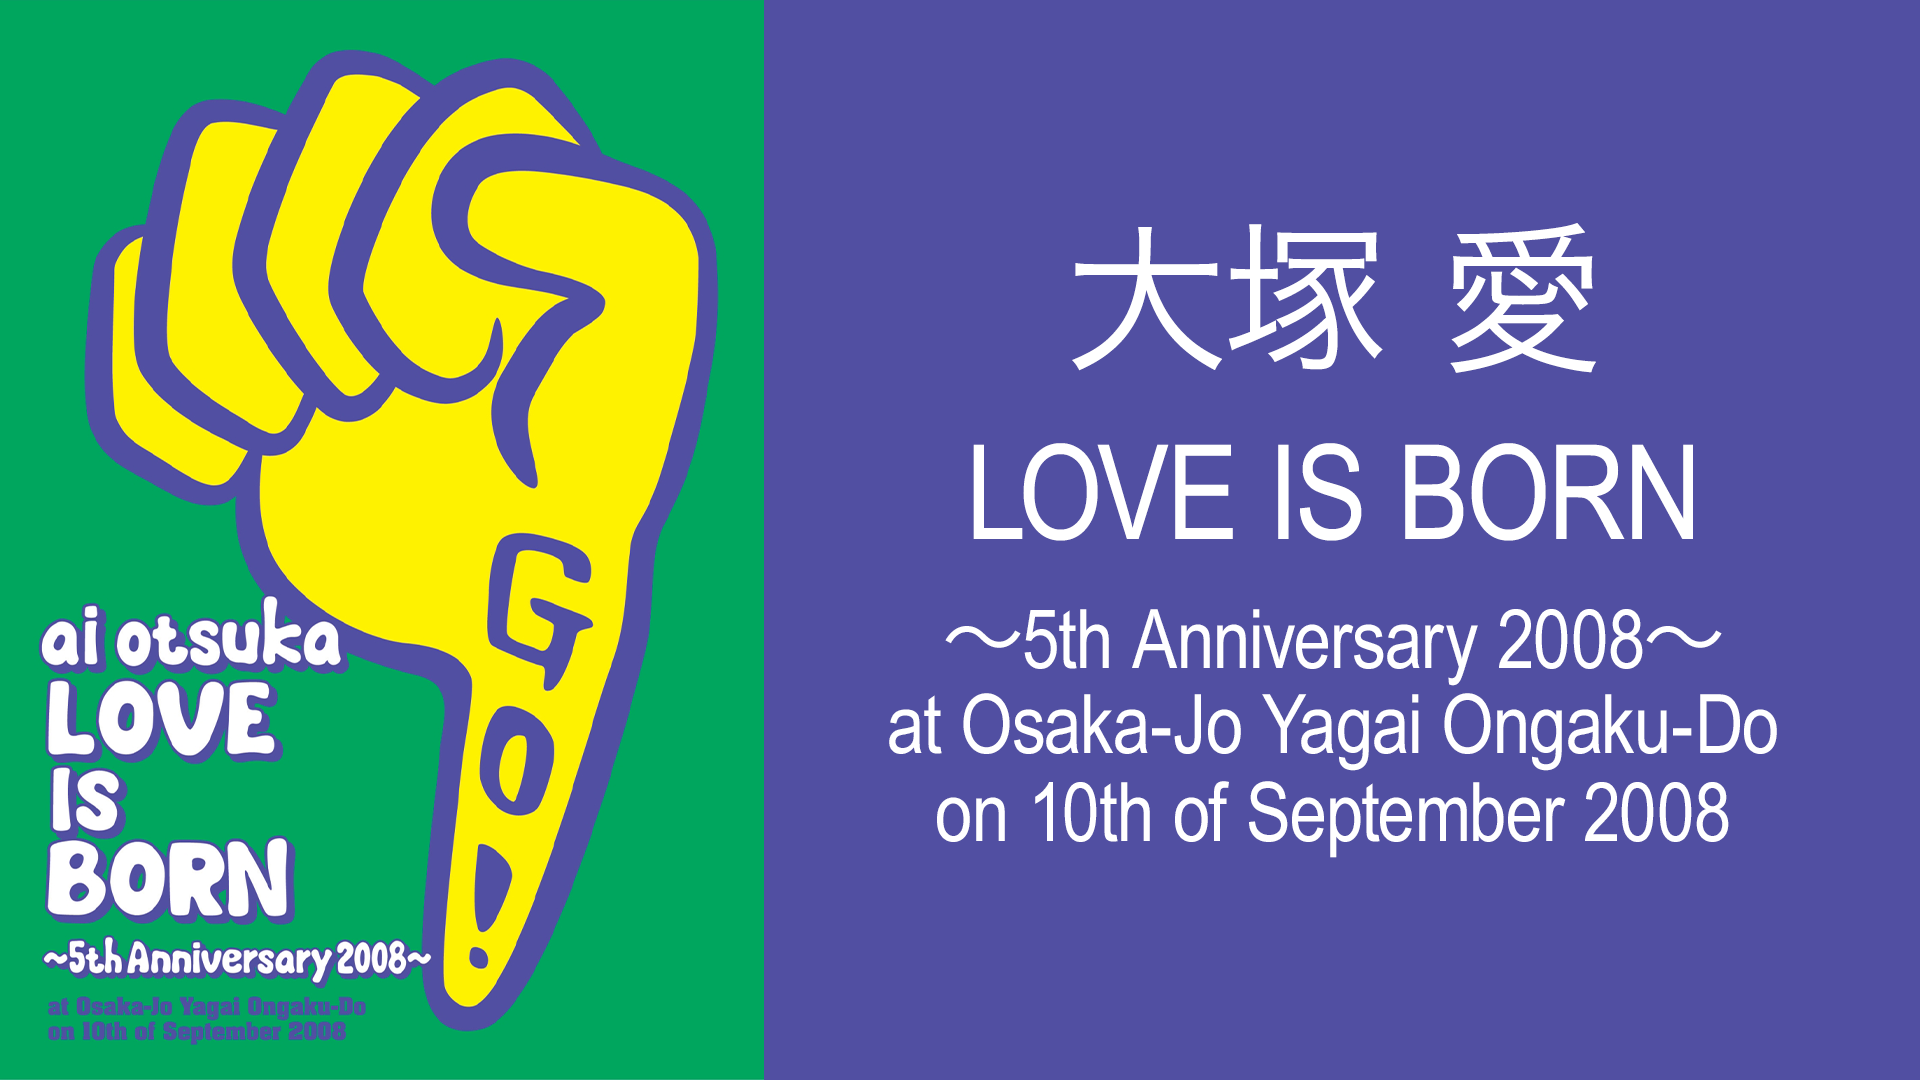 大塚 愛【LOVE IS BORN】?5th Anniversary 2008? at Osaka-Jo Yagai Ongaku-Do on 10th of September 2008【通常盤】 [DVD]